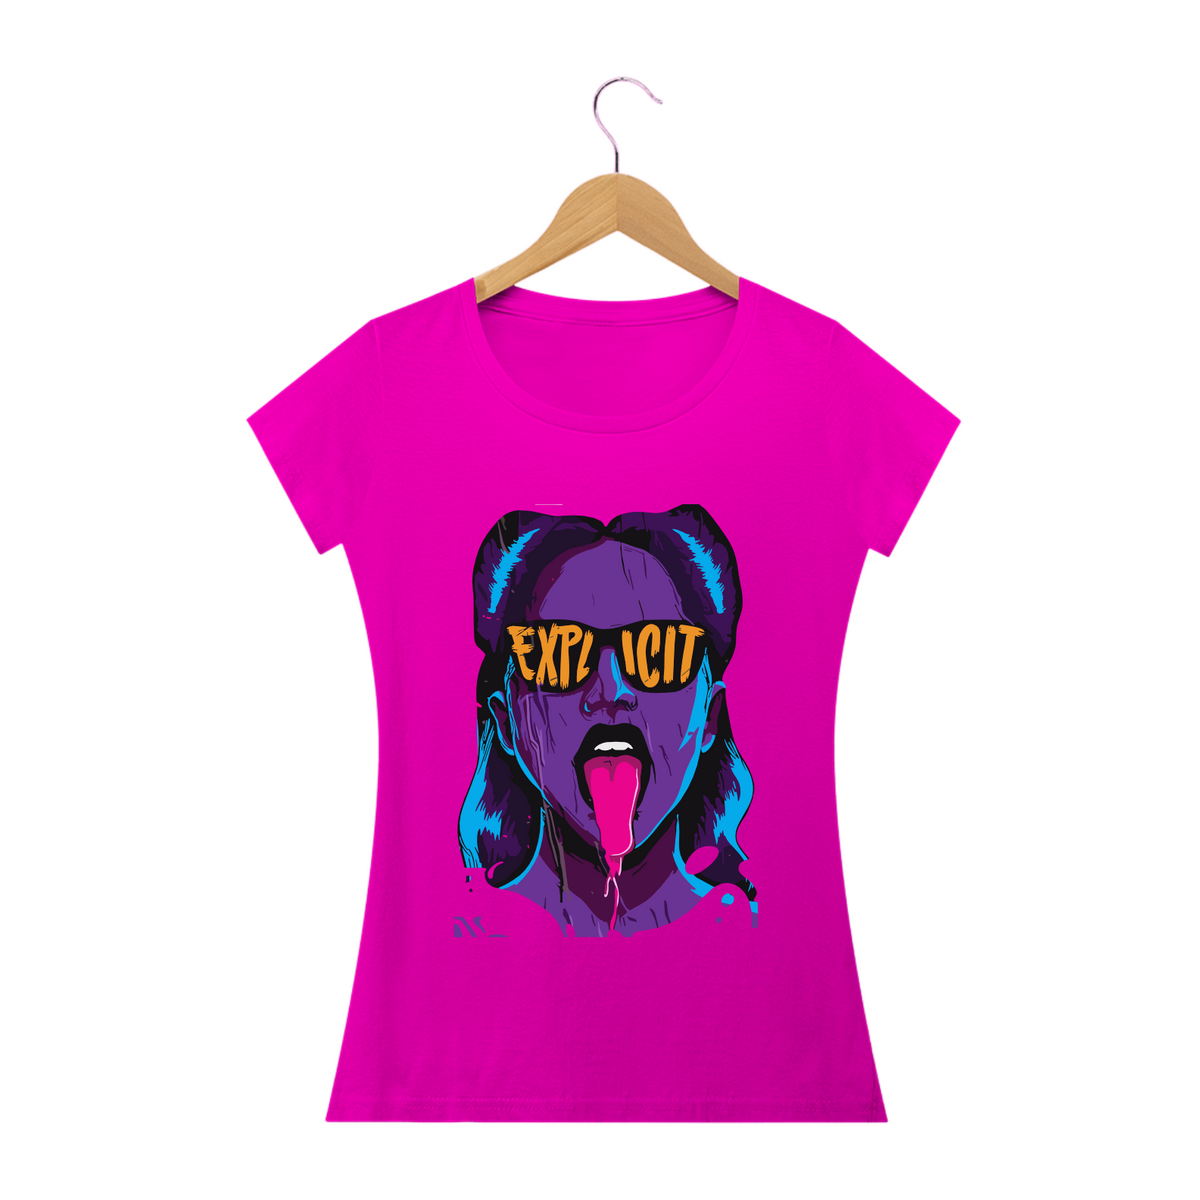 Nome do produto: EXPLICIT GIRL - Camiseta Personalizada com Estampa Pop Art